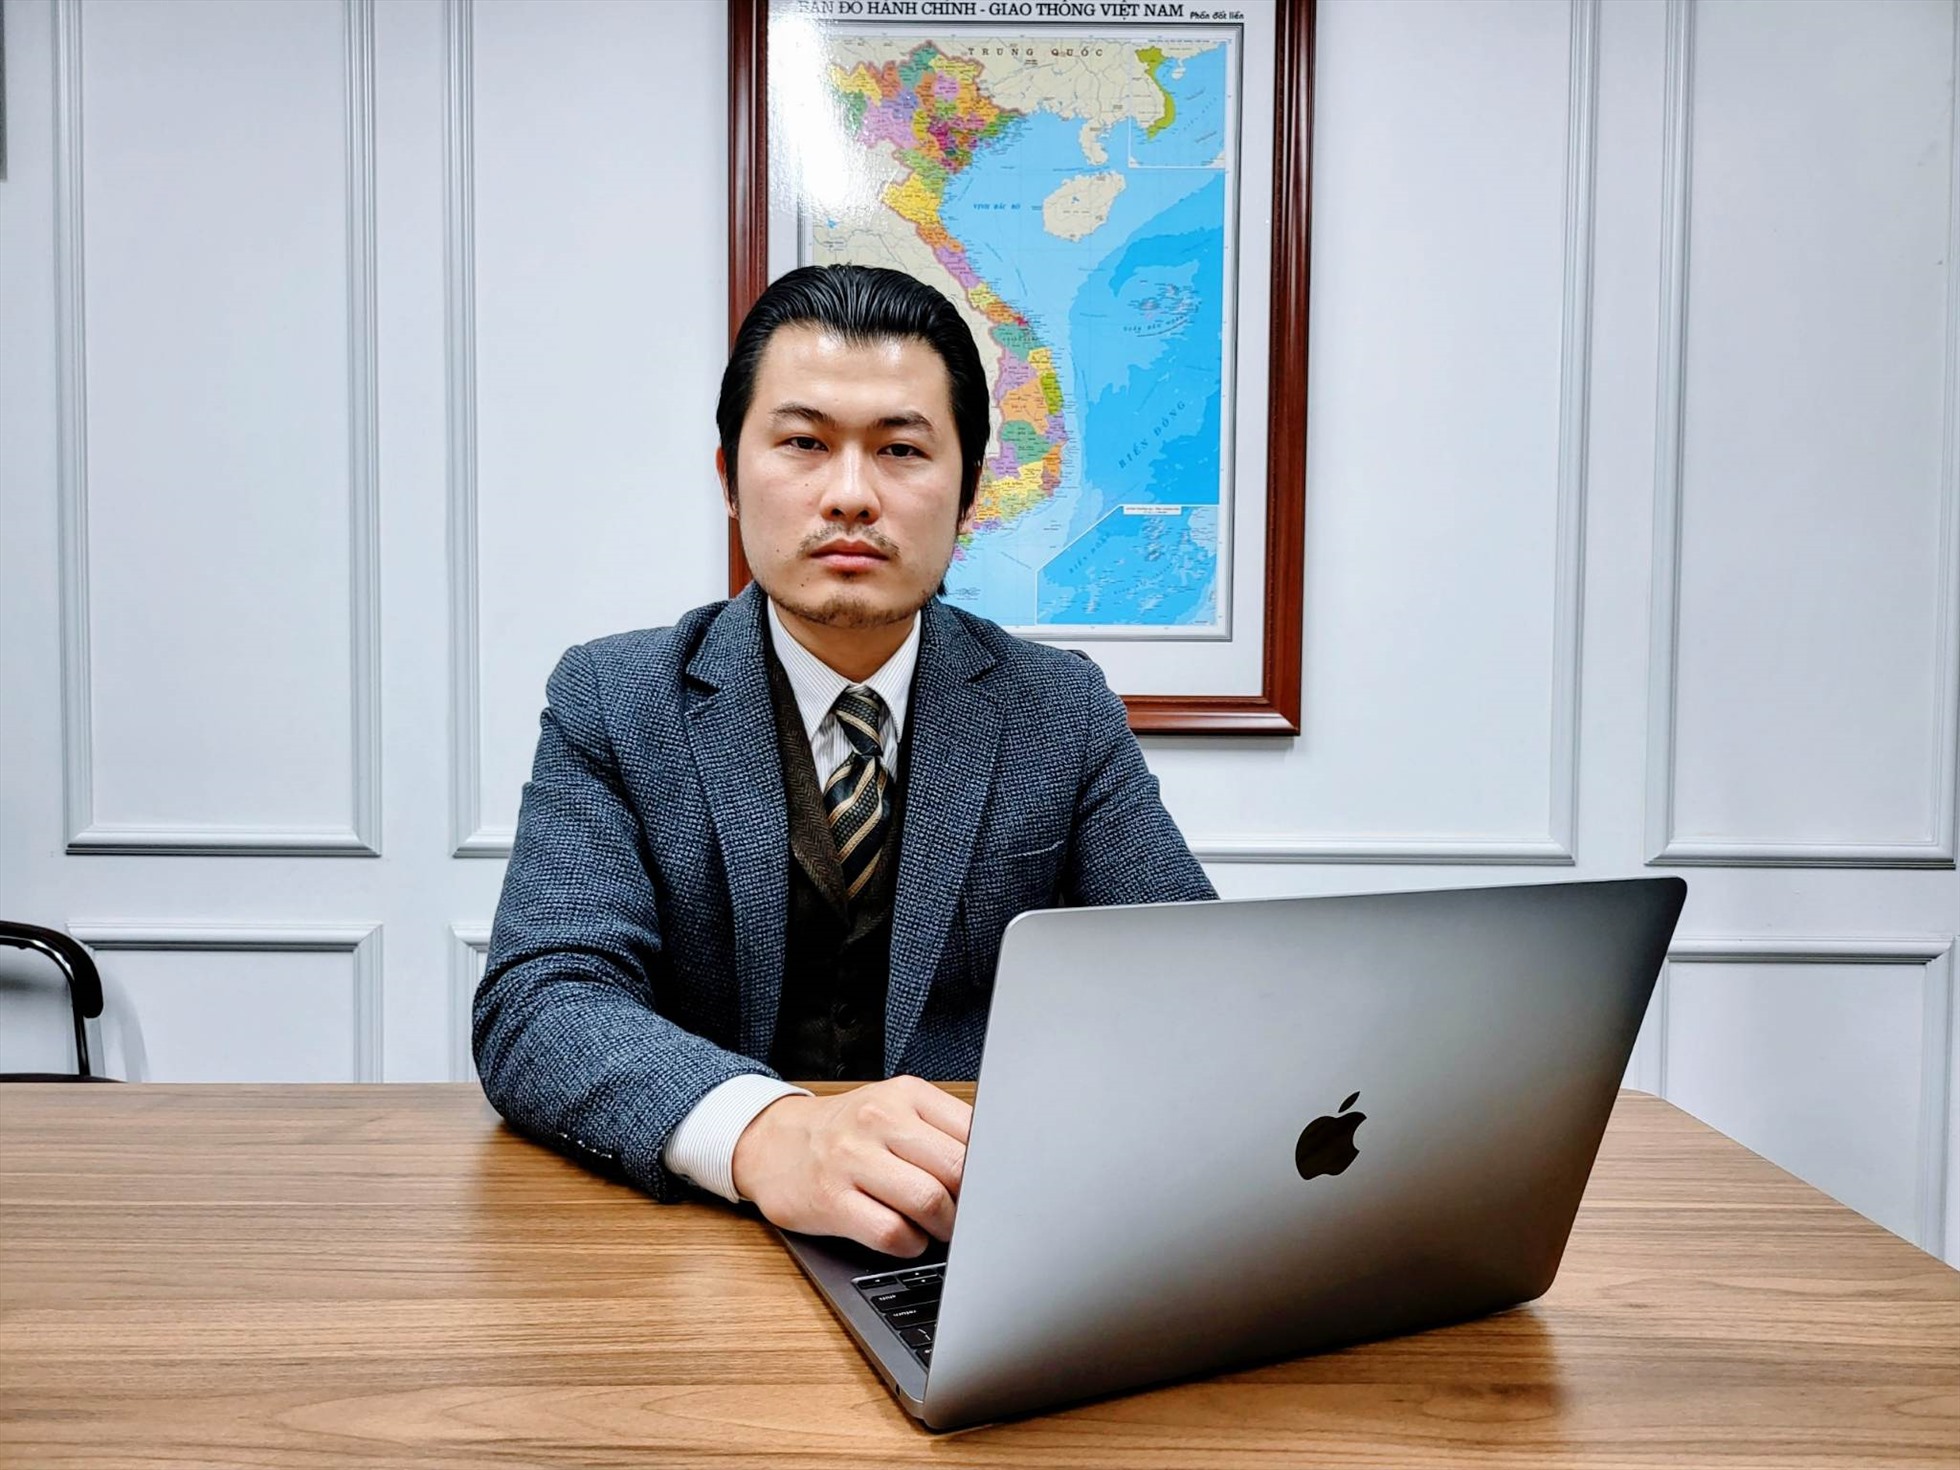 Luật sư Nguyễn Trọng Nghĩa (Giám đốc Hệ thống dịch vụ pháp lý toàn quốc Luật sư X).